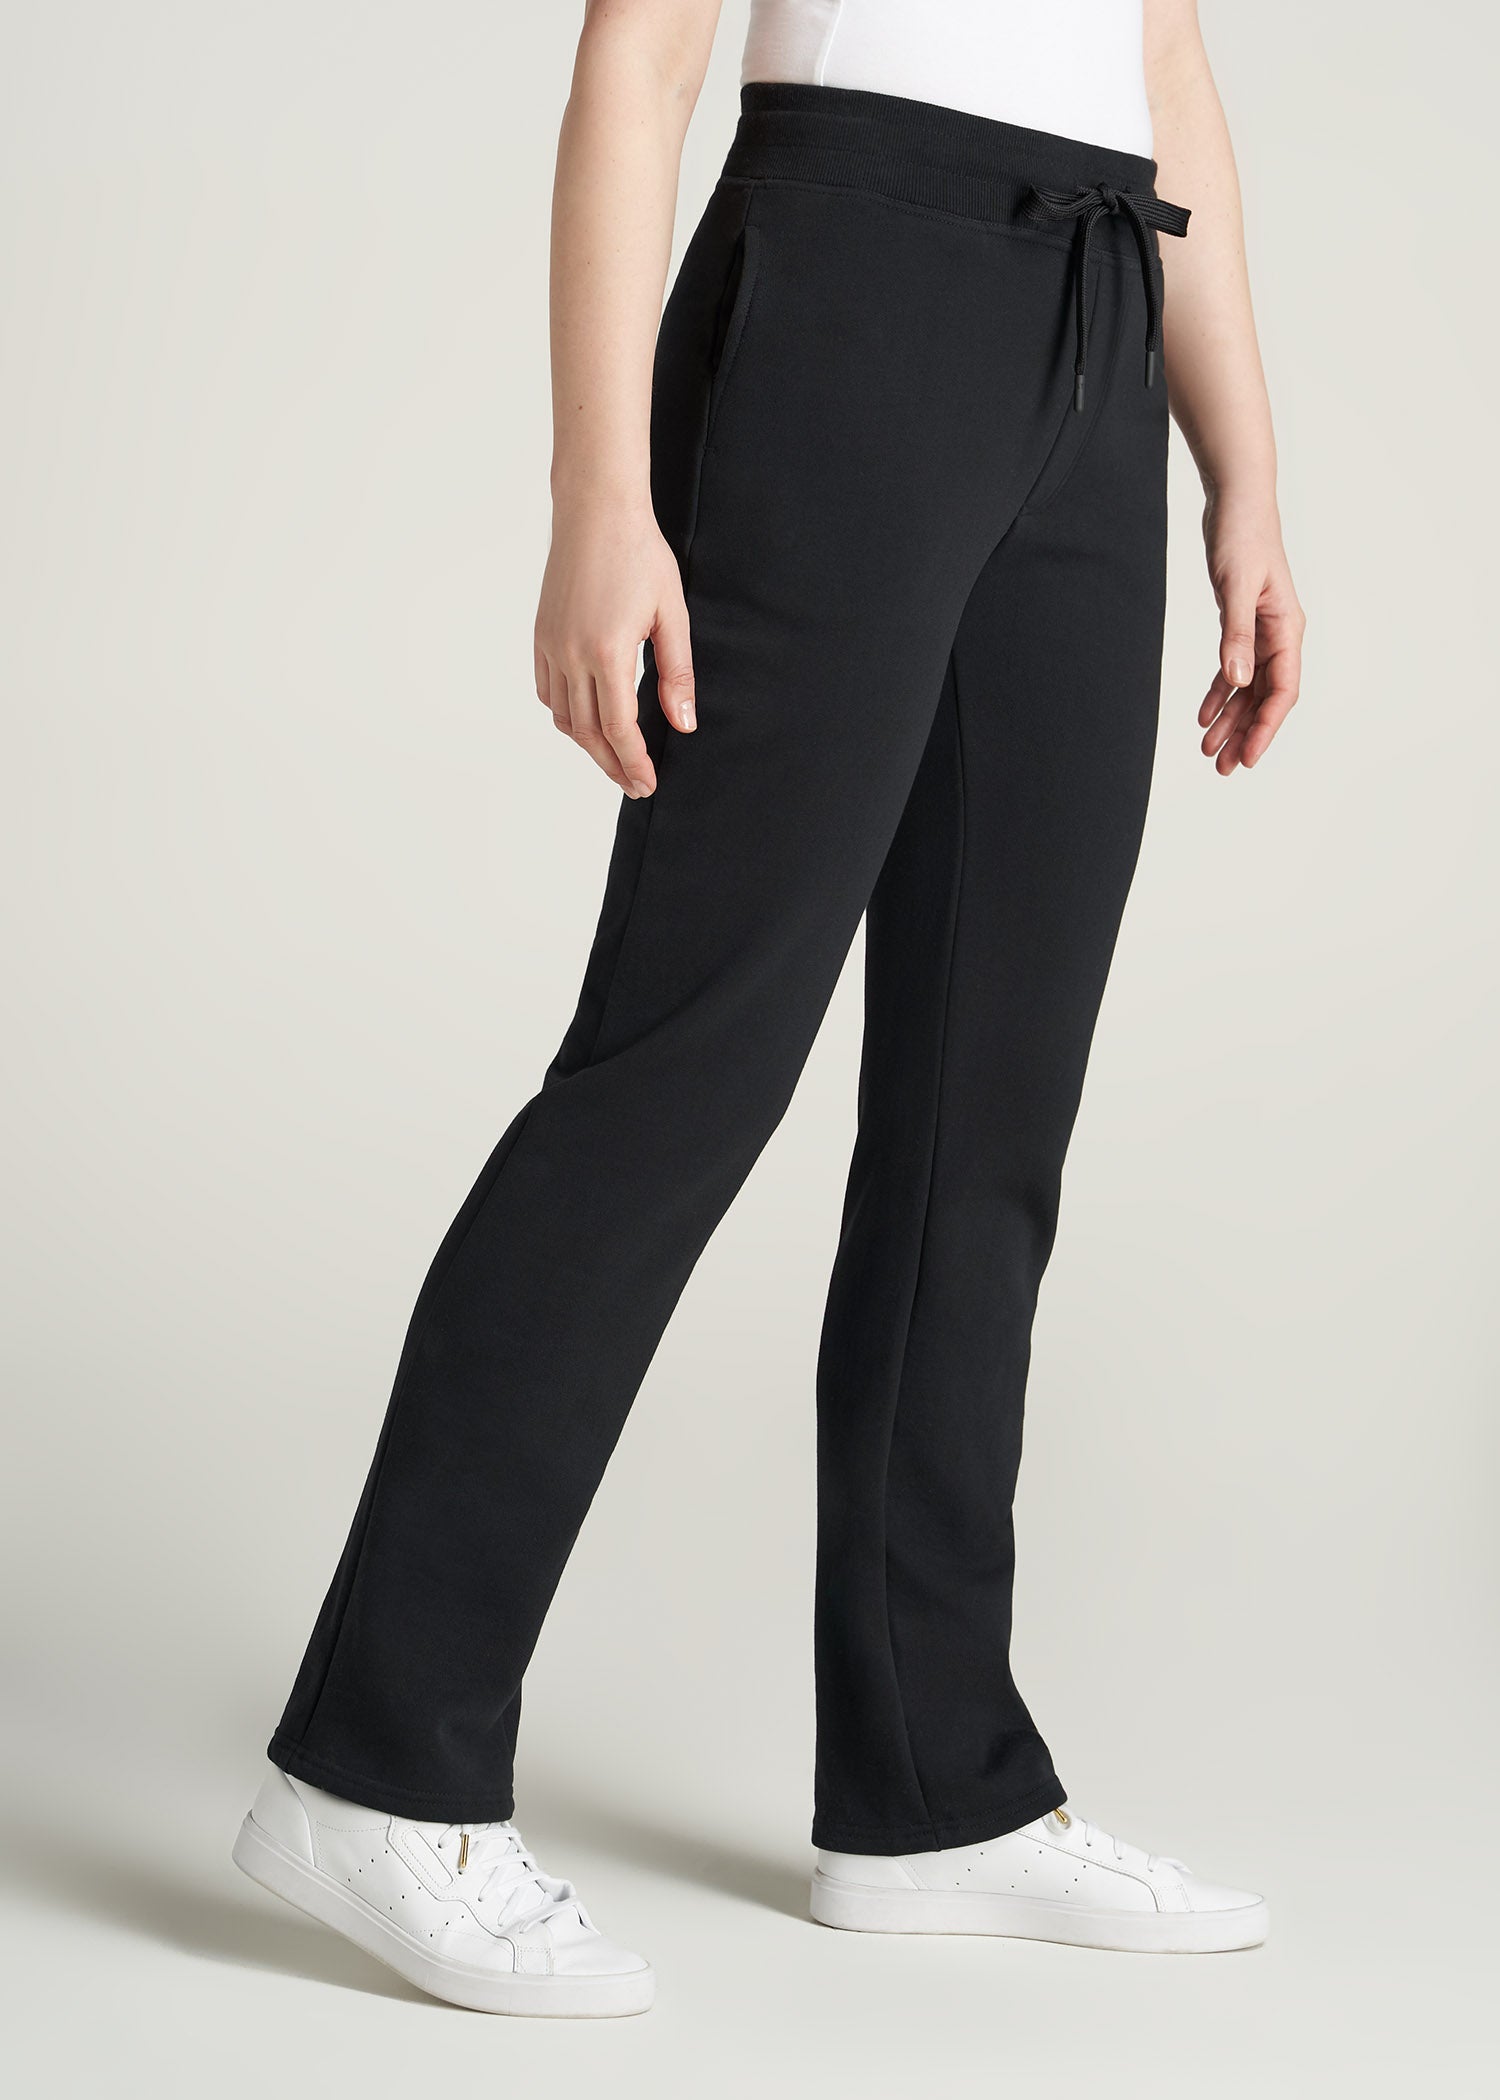    American-Tall-Women-WKND-Fleece-OpenBottom-Sweatpants-Black-side